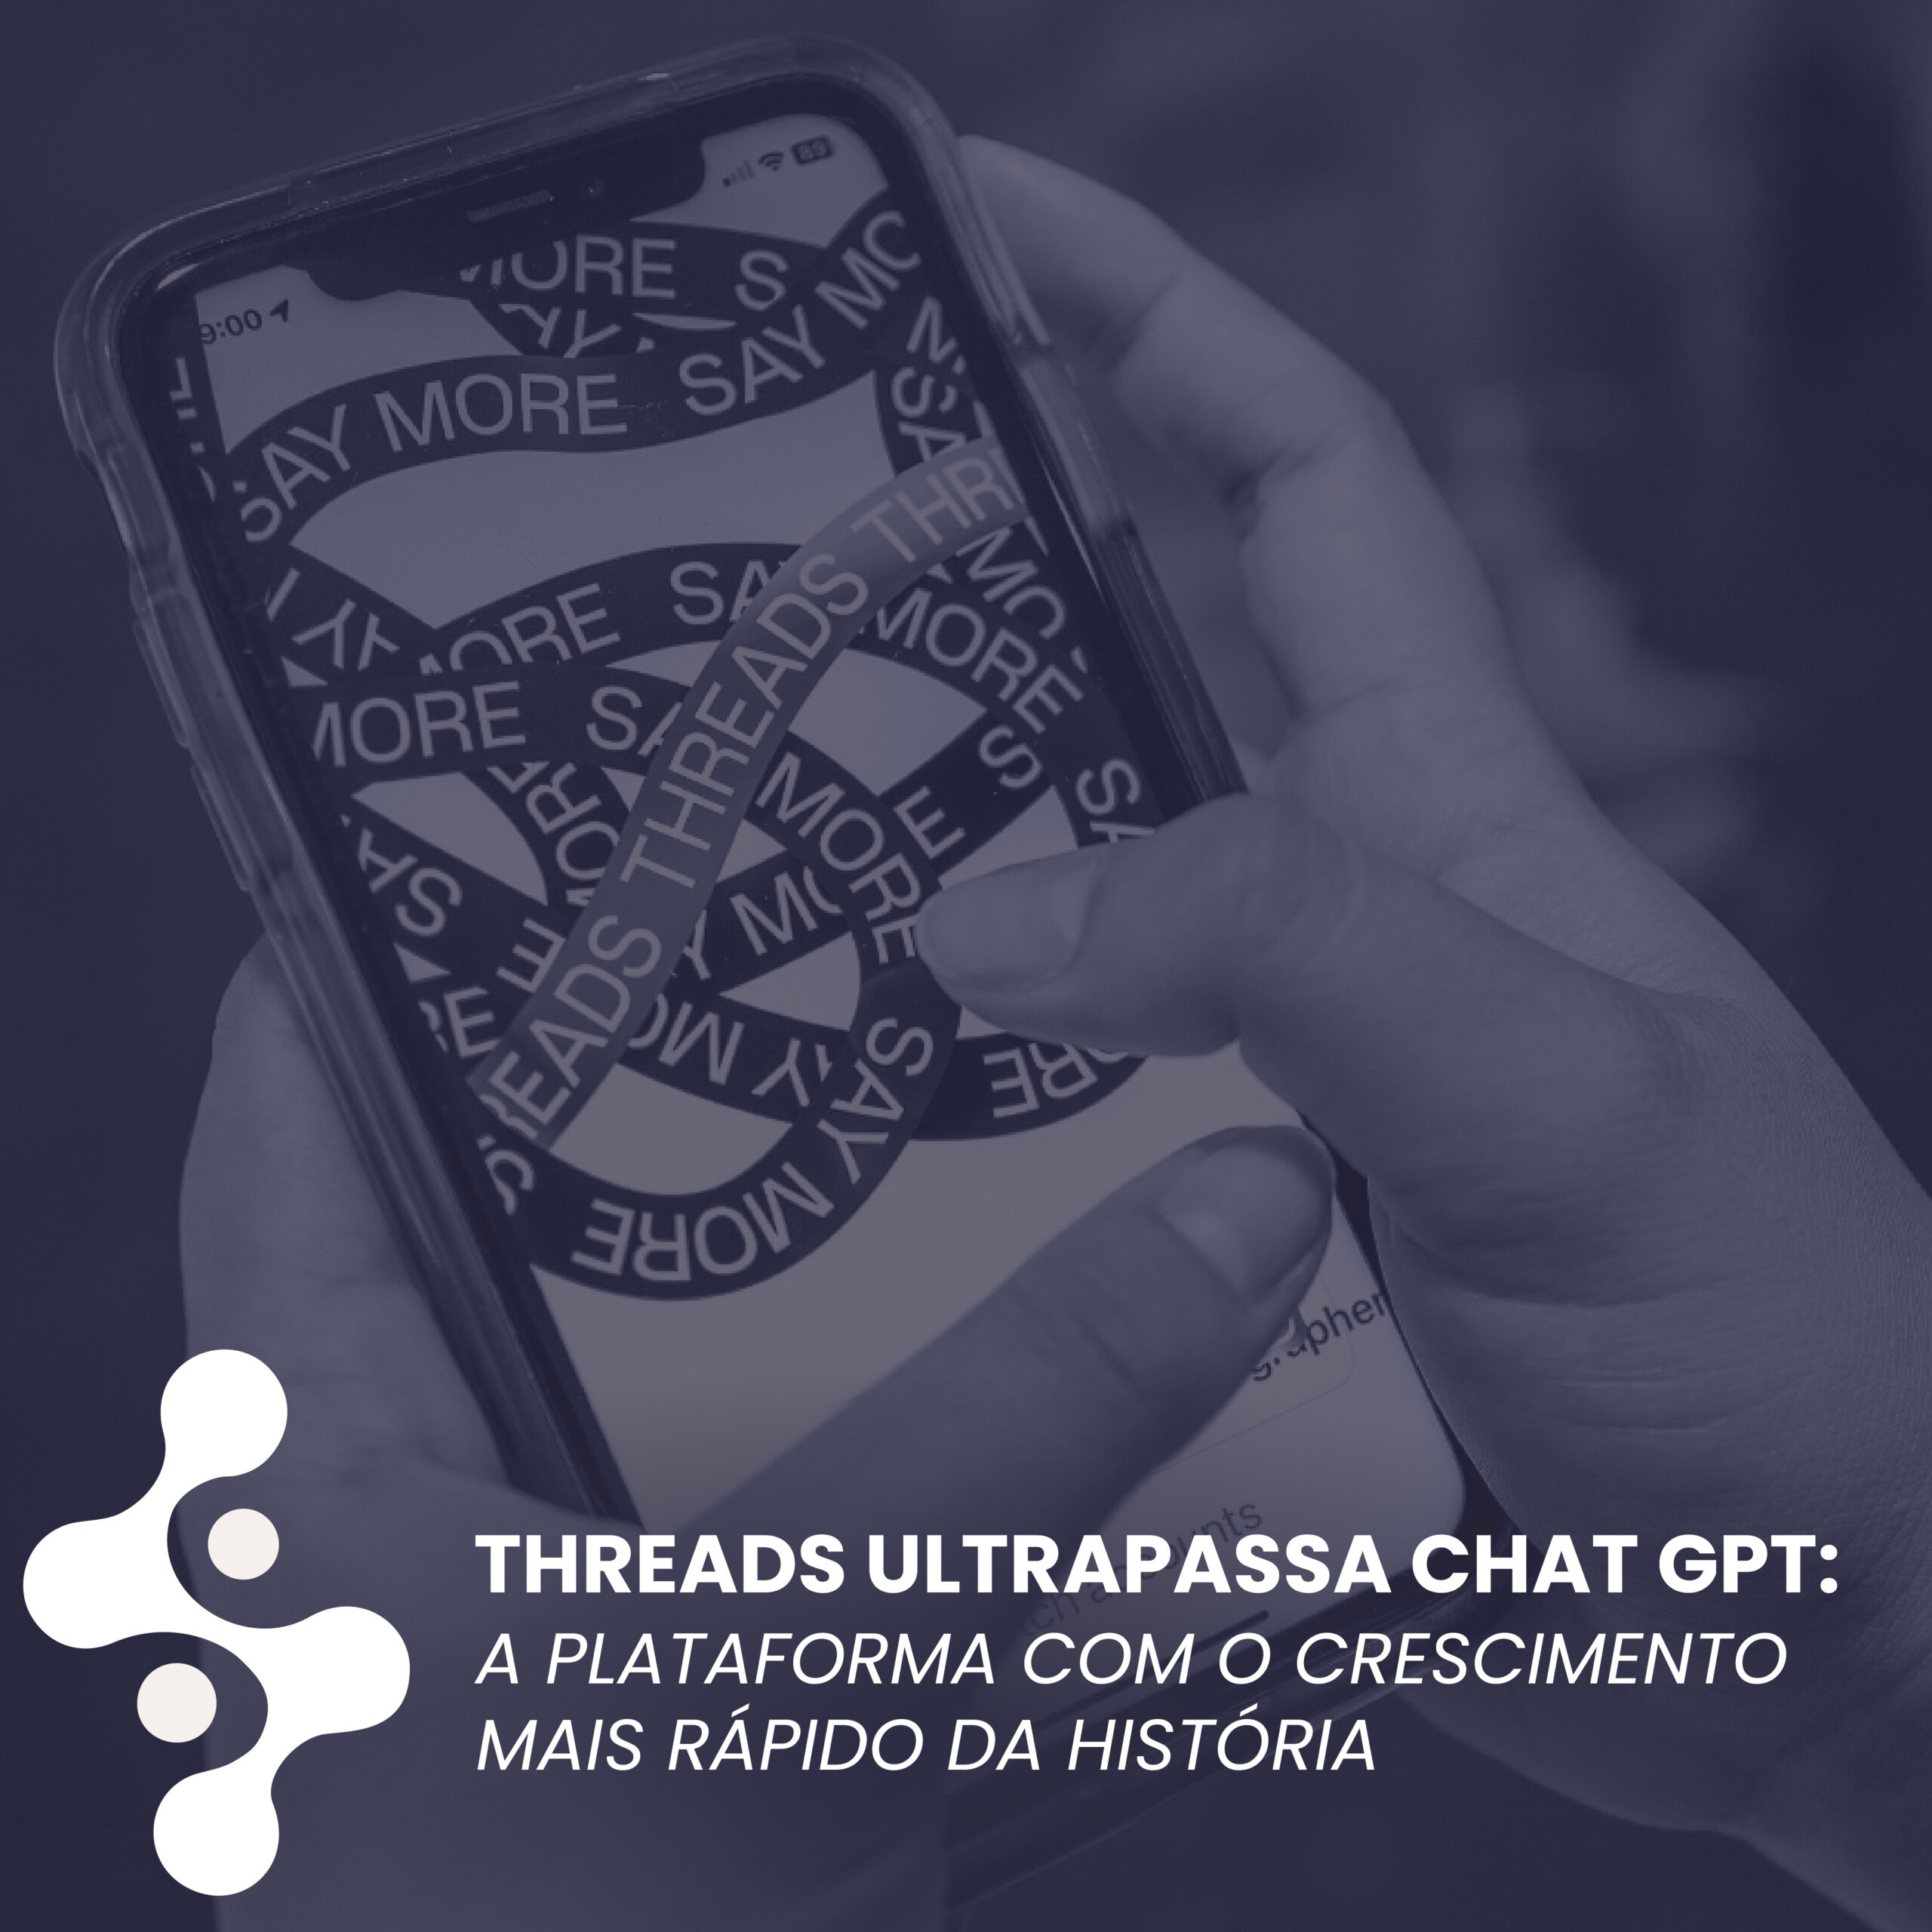 Threads ultrapassa ChatGPT e vira plataforma com crescimento mais rápido da história.  